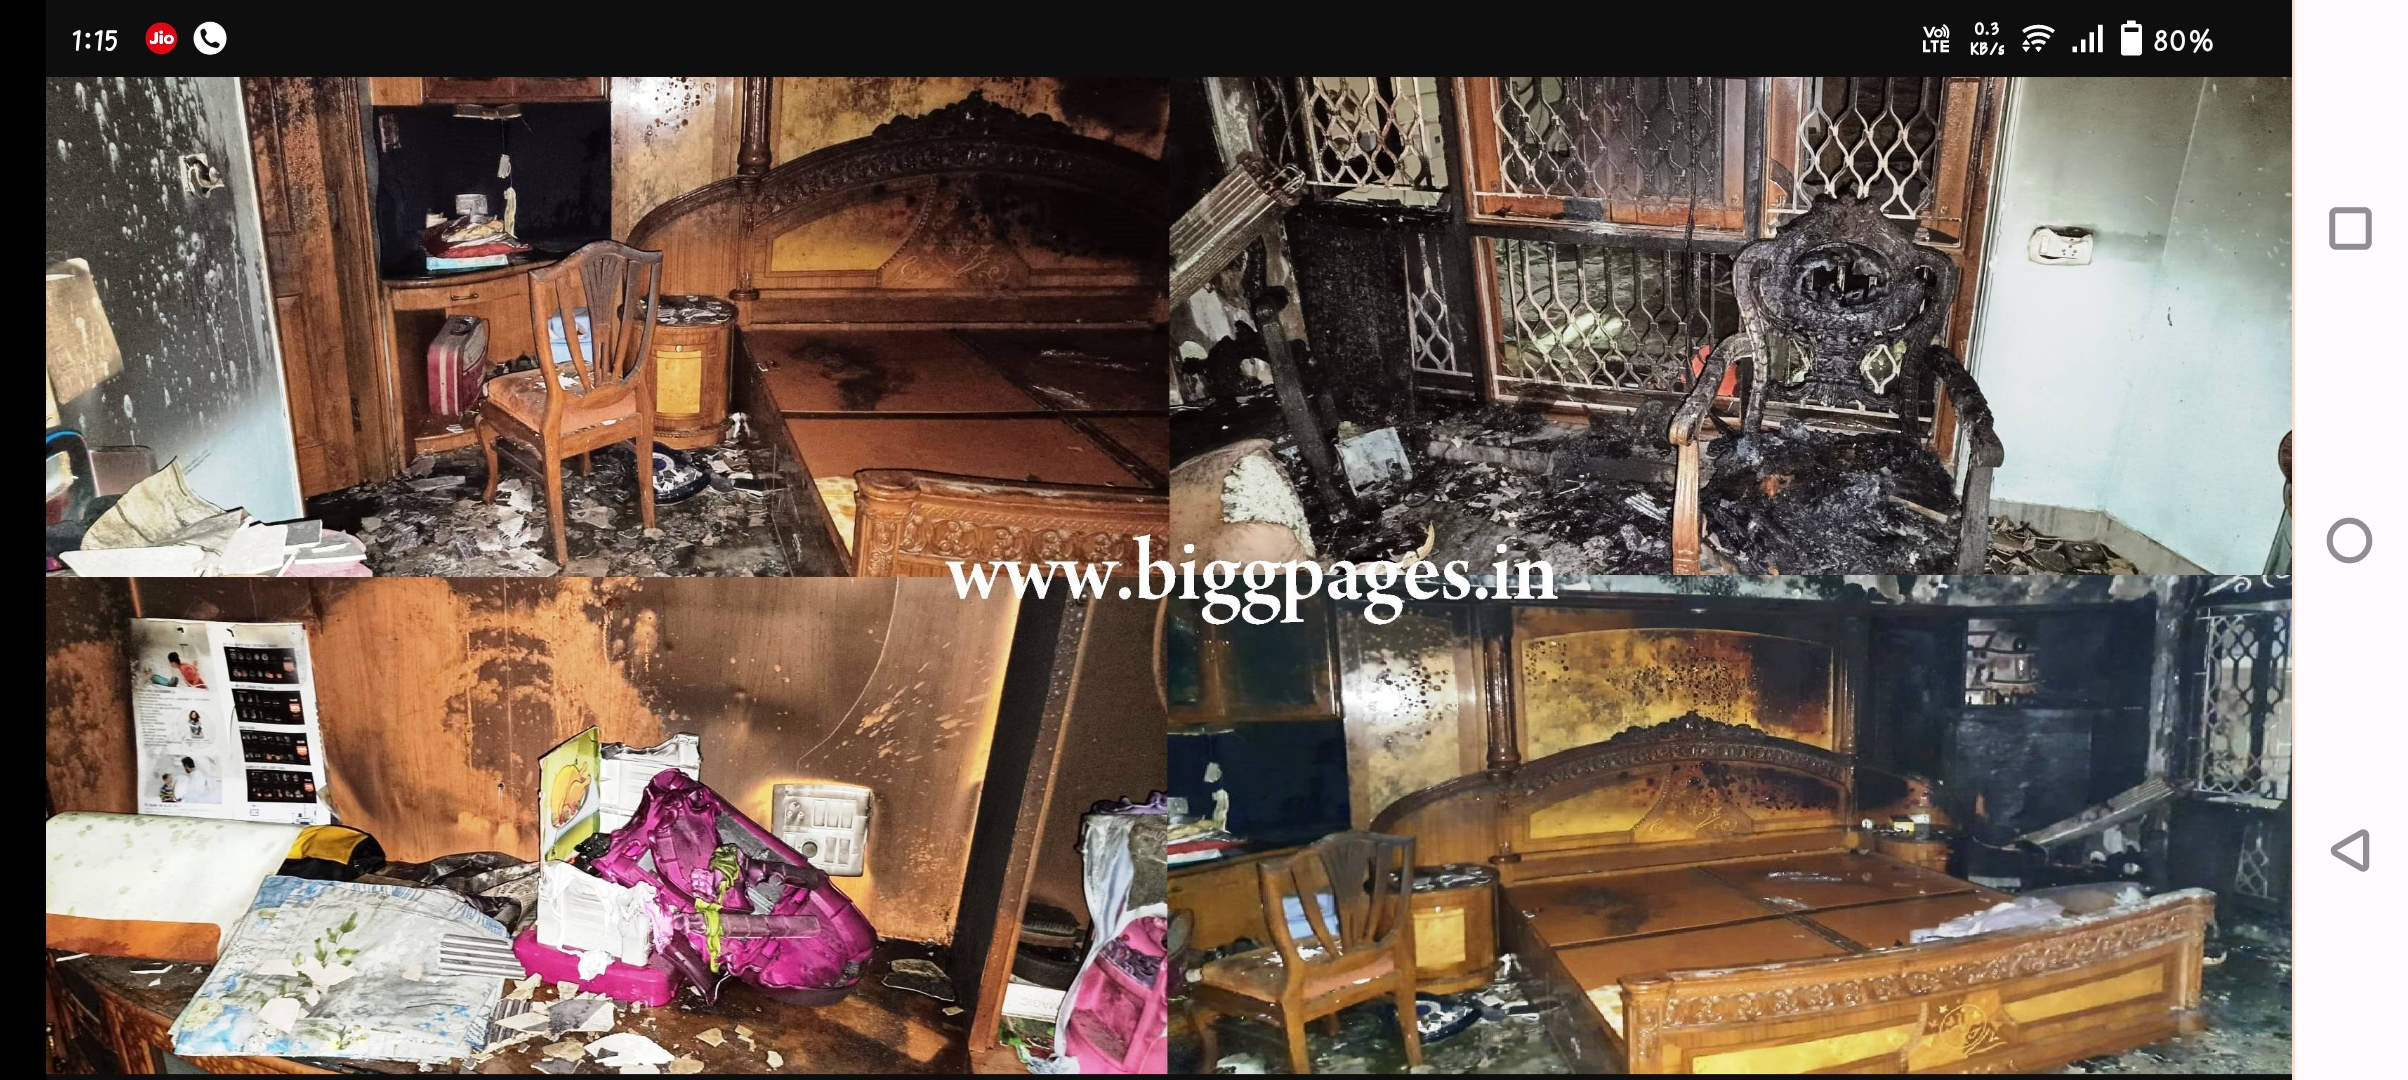 लोहा व्यापारी के घर में भीषण आग से लाखो का हुआ नुकसान 